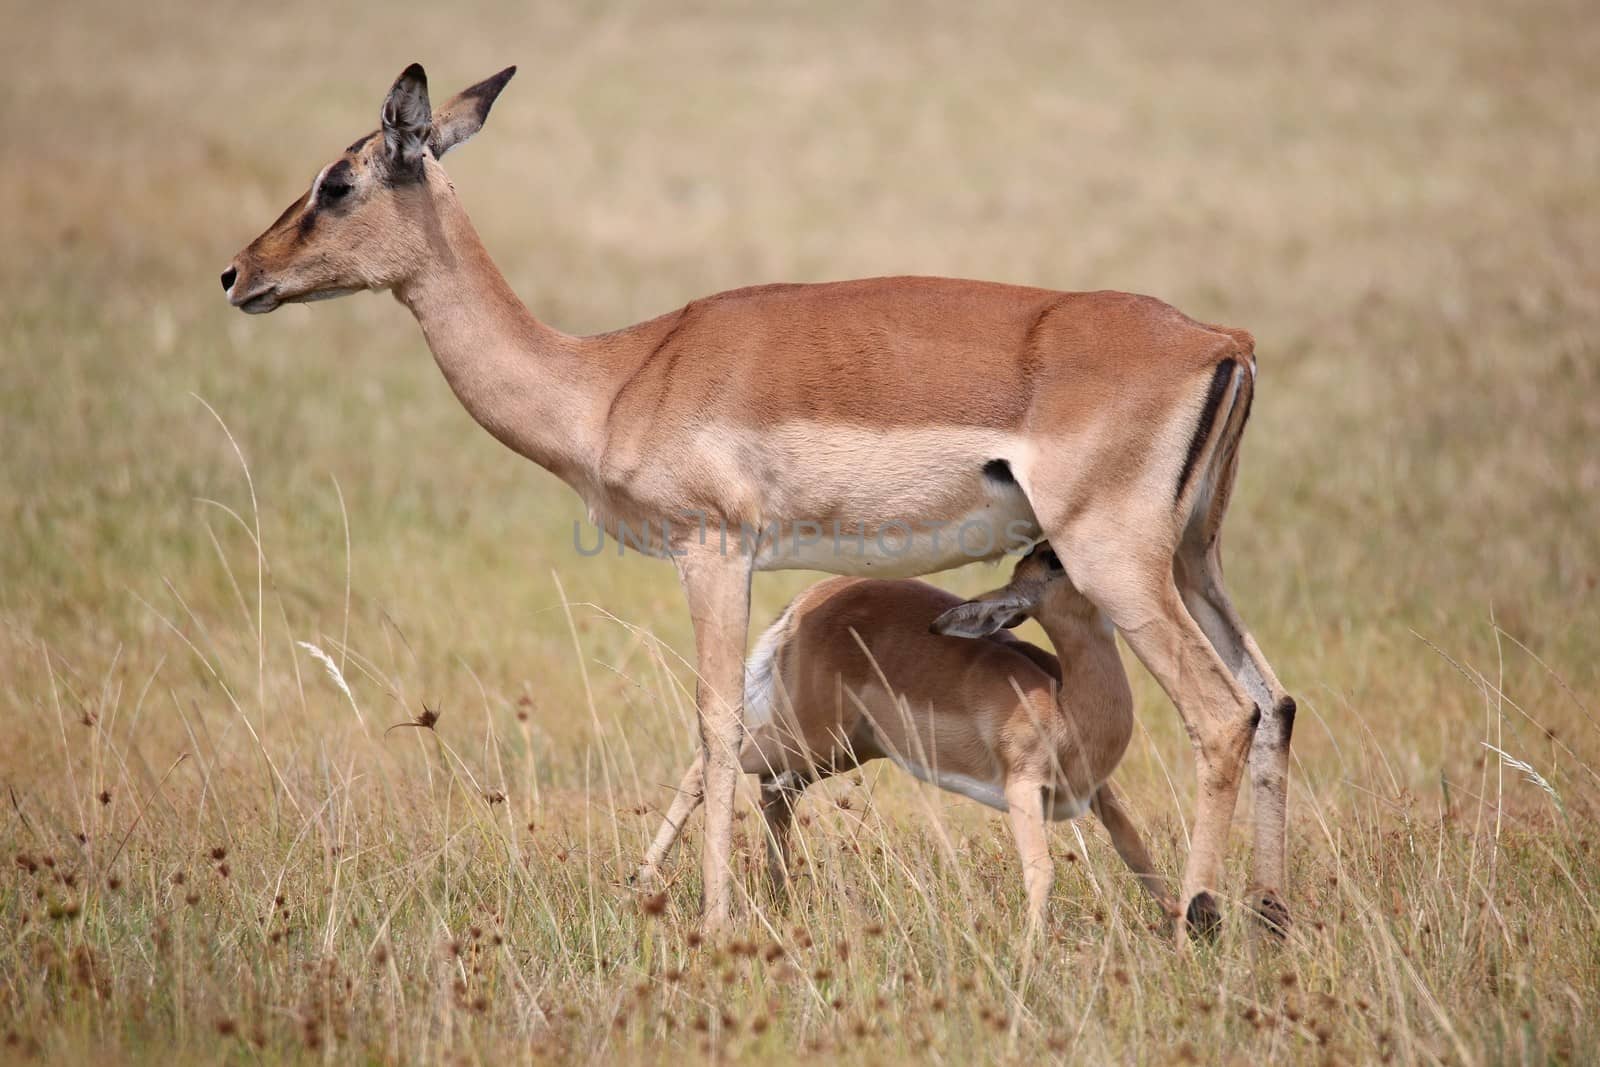 Impala Antelope Baby and Mom by fouroaks